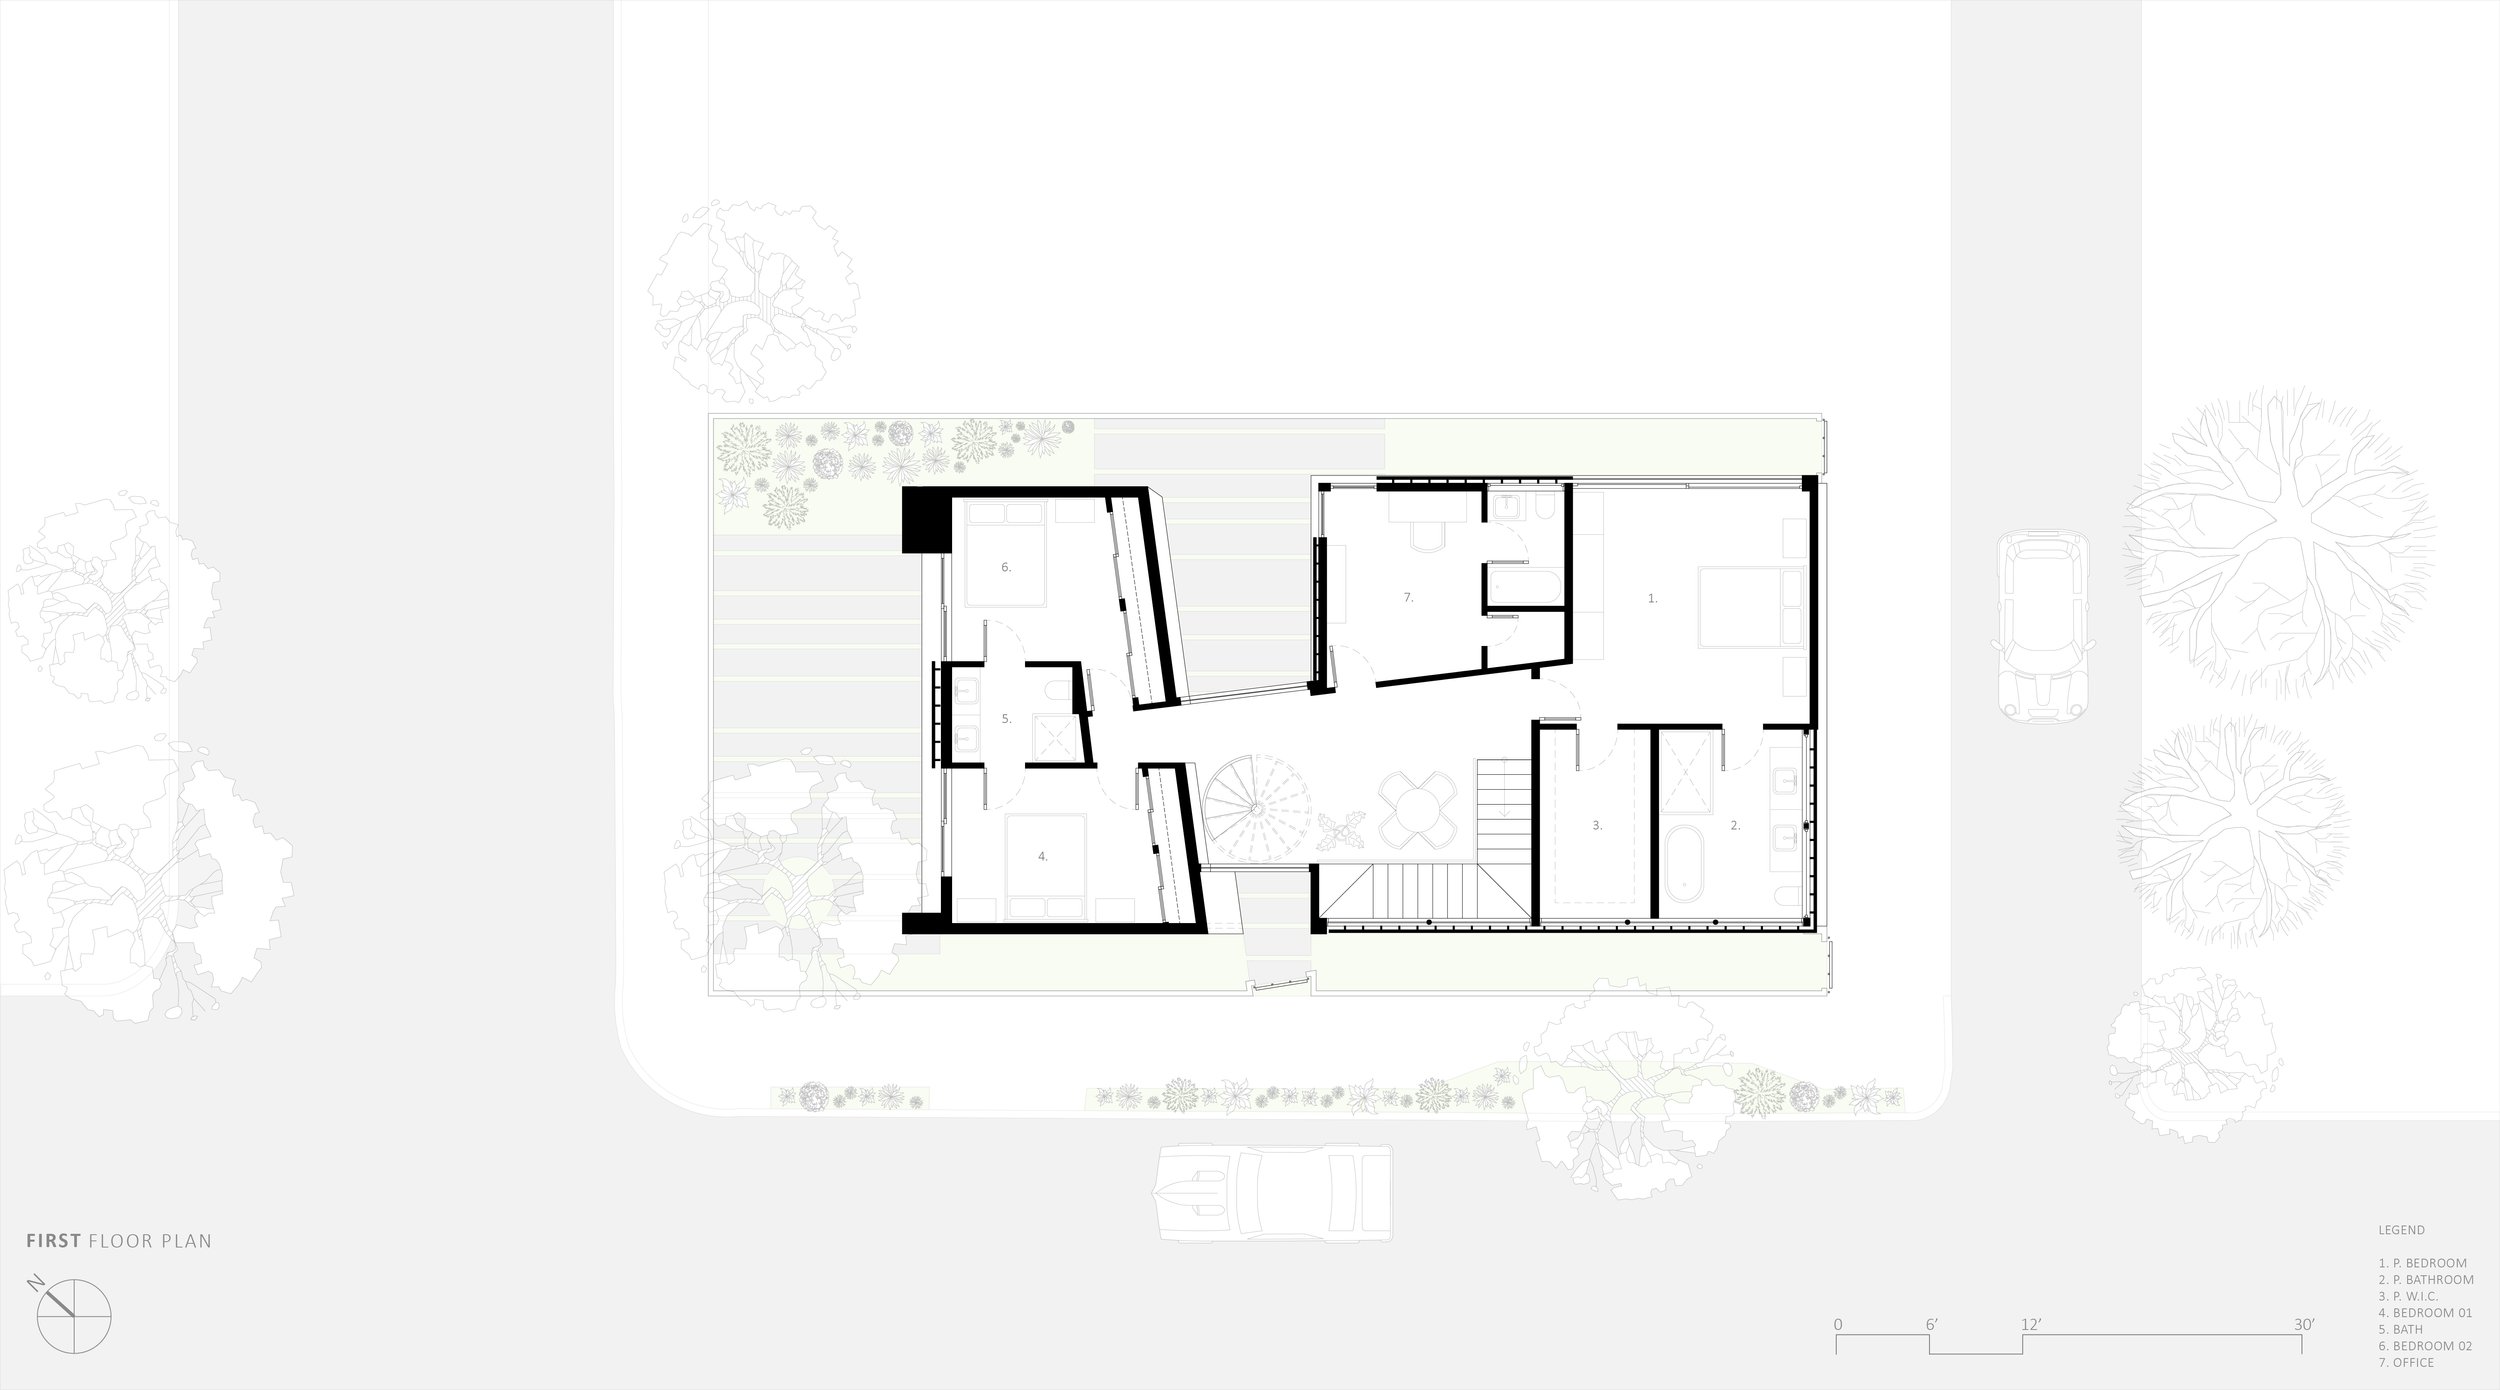 bspk-design-architecture-california-2600-residenital-spiral house-first level floor plan.jpg